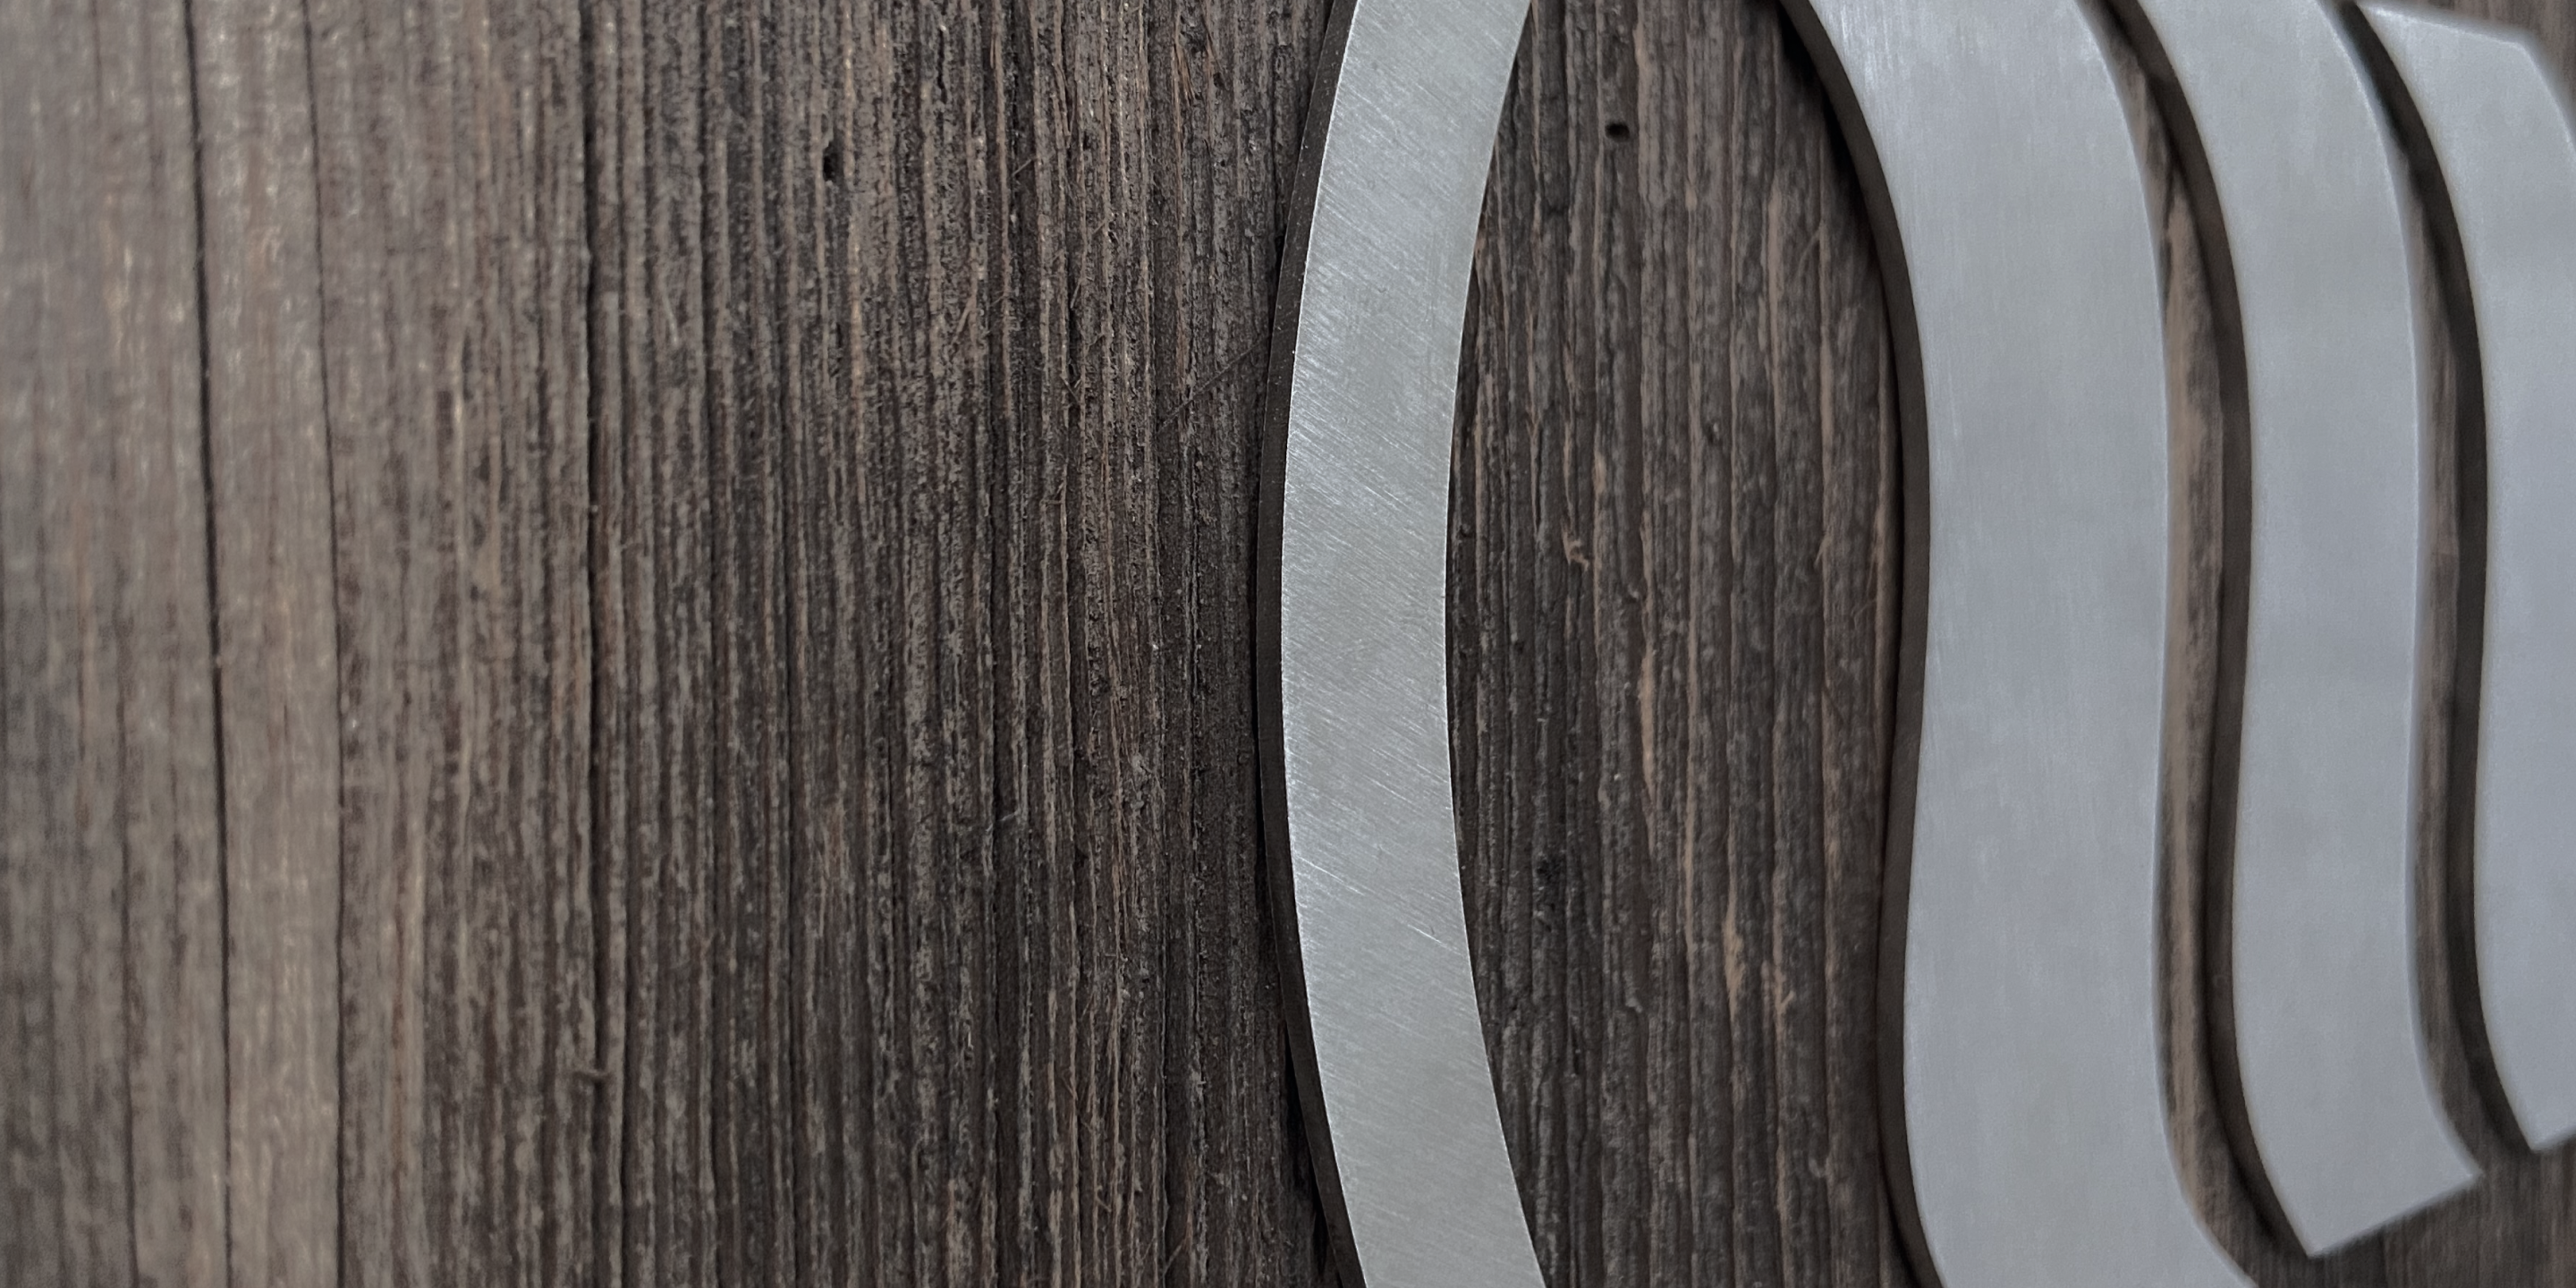 Un logo memon argenté en métal sur un fond brun en bois